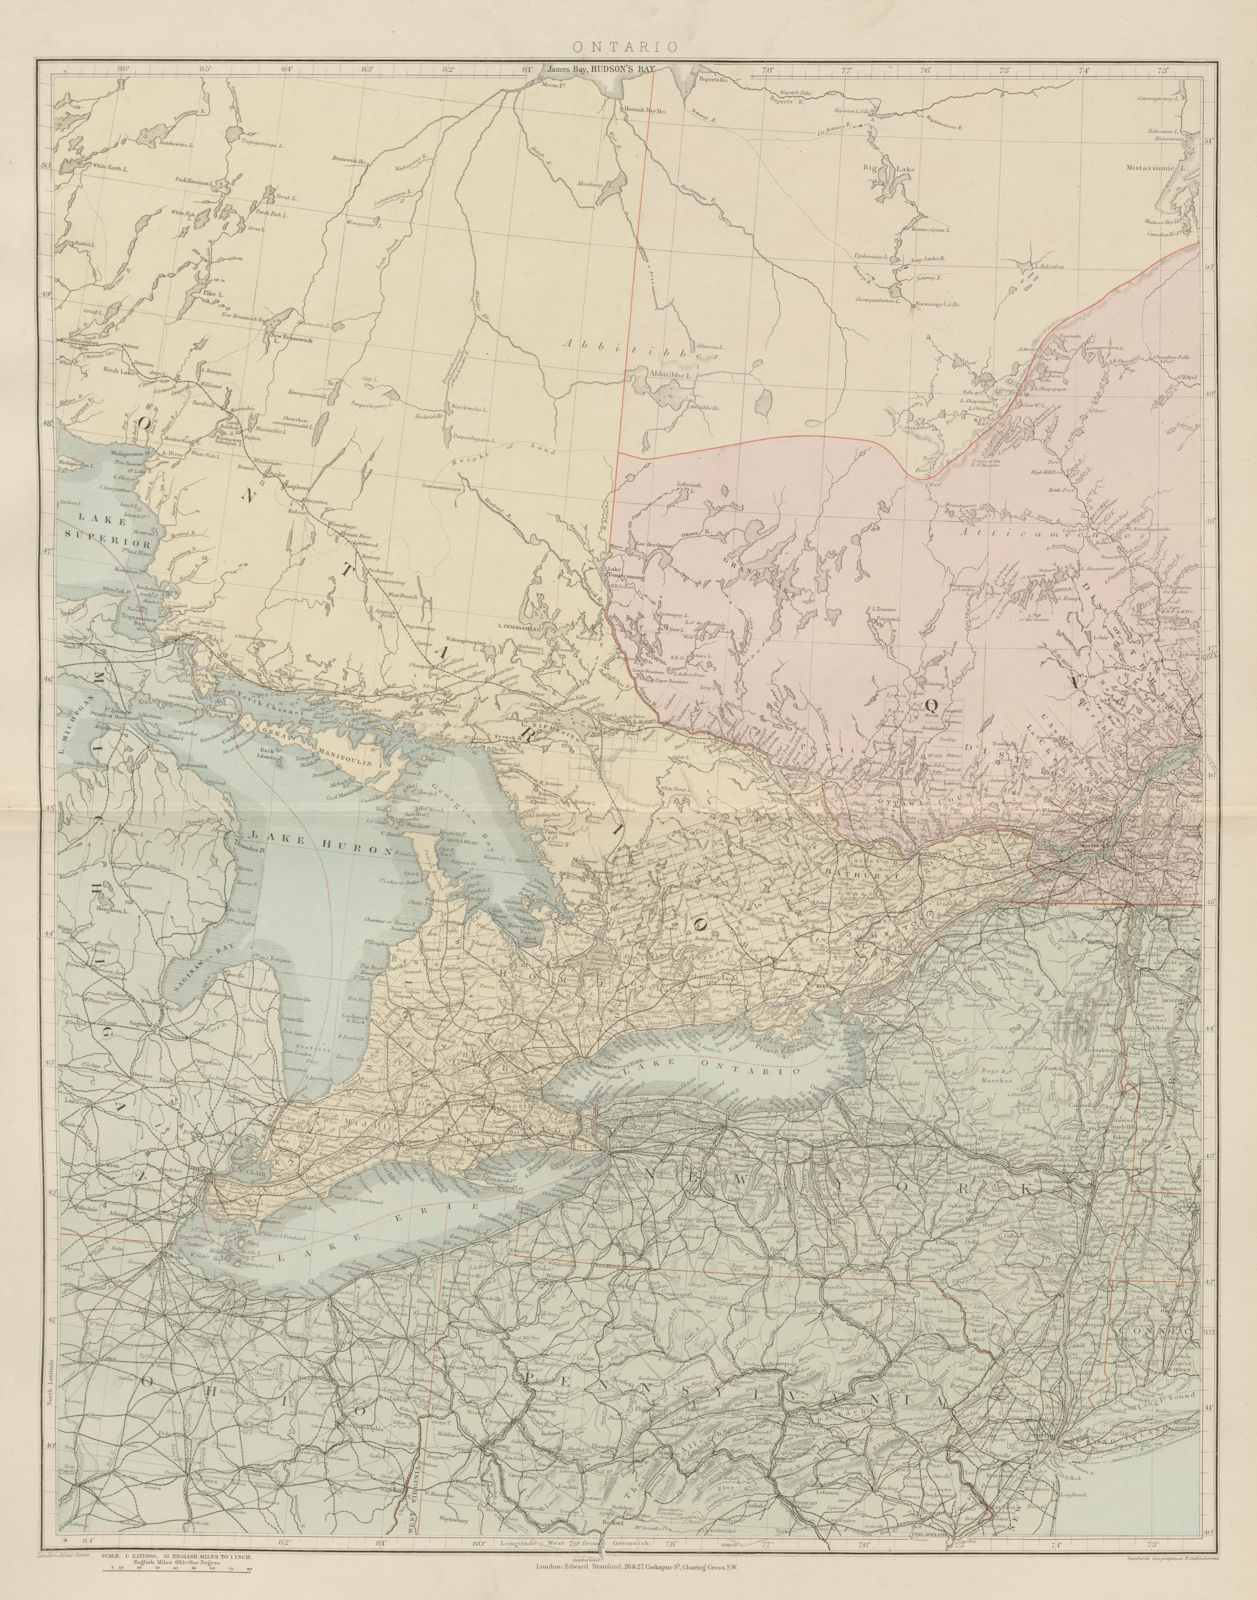 Great Lakes Huron Erie Ontario New York State Pennsylvania. STANFORD 1896 map